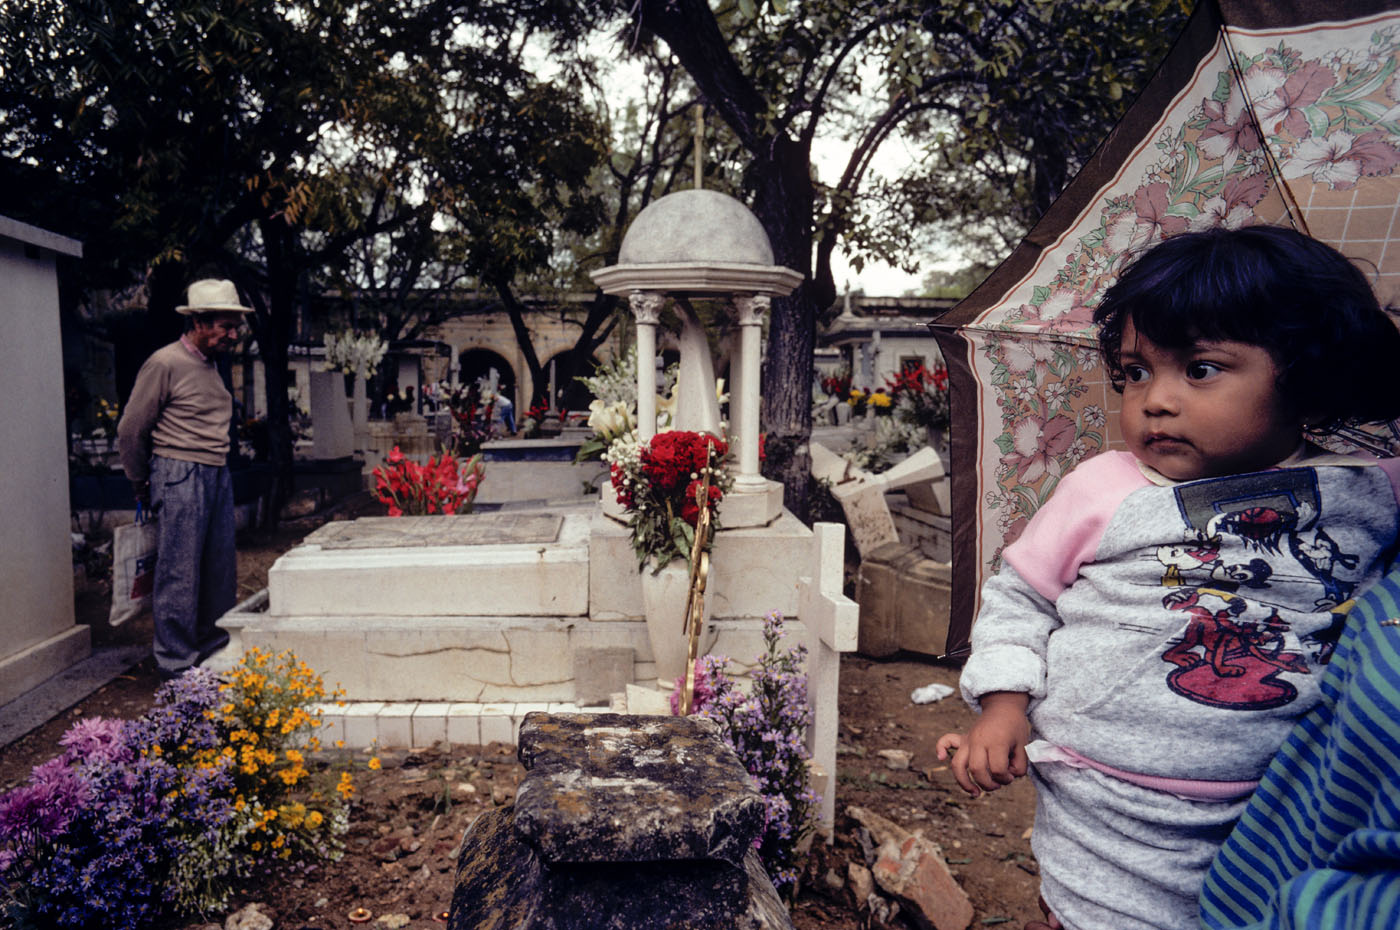 Cemetery, Oaxaca